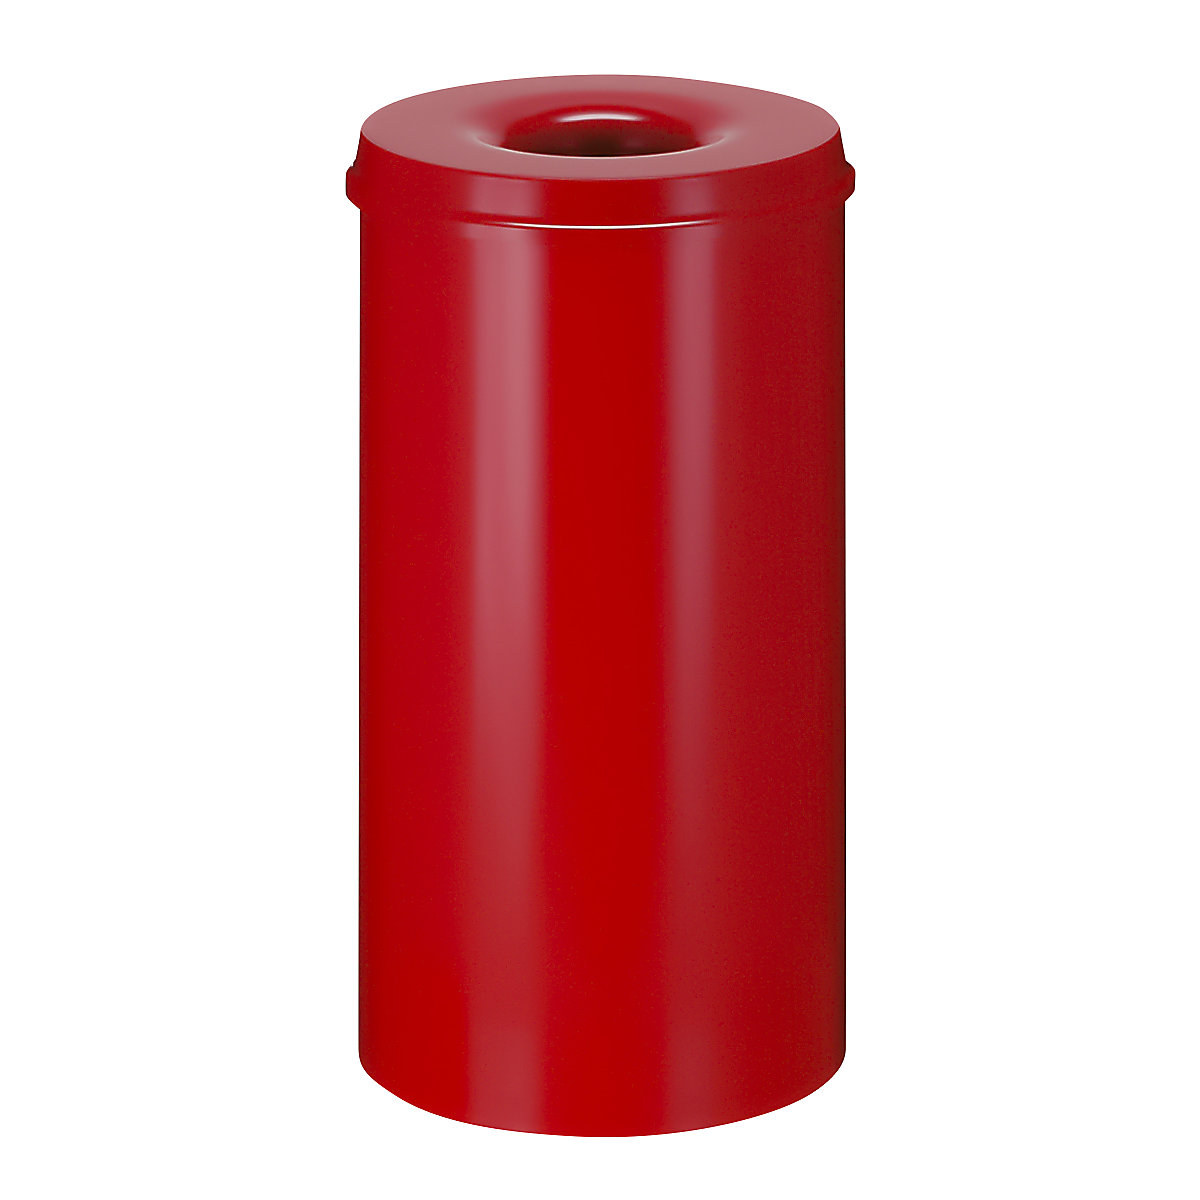 Bezpečnostný kôš na papier, oceľový, samohasiaci, objem 50 l, v x Ø 625 x 335 mm, korpus červená / hasiaca hlavica červená-13